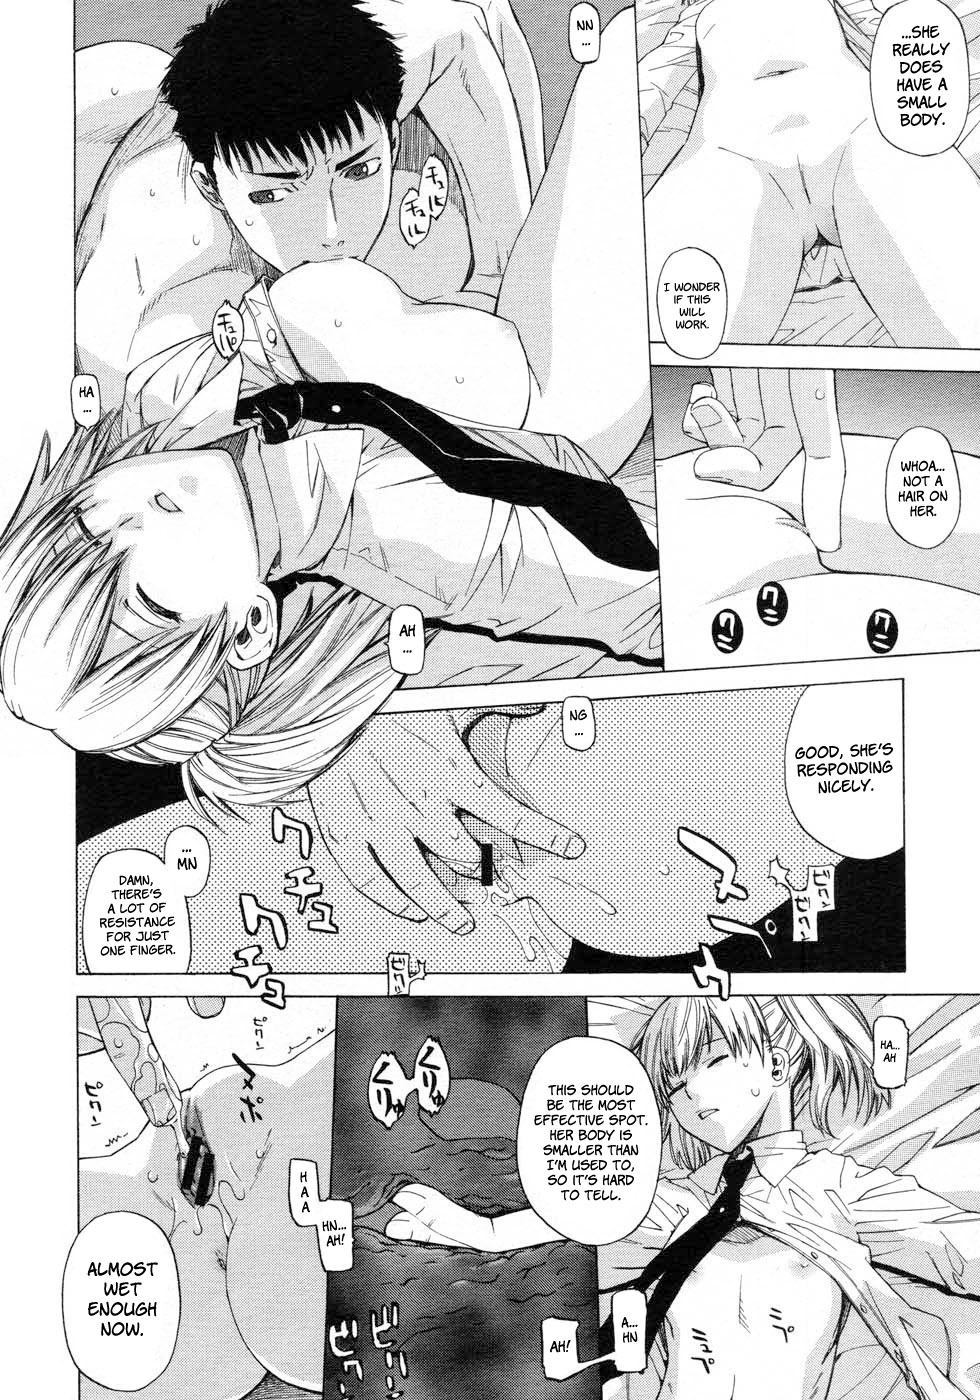 Angraecum 154 hentai manga